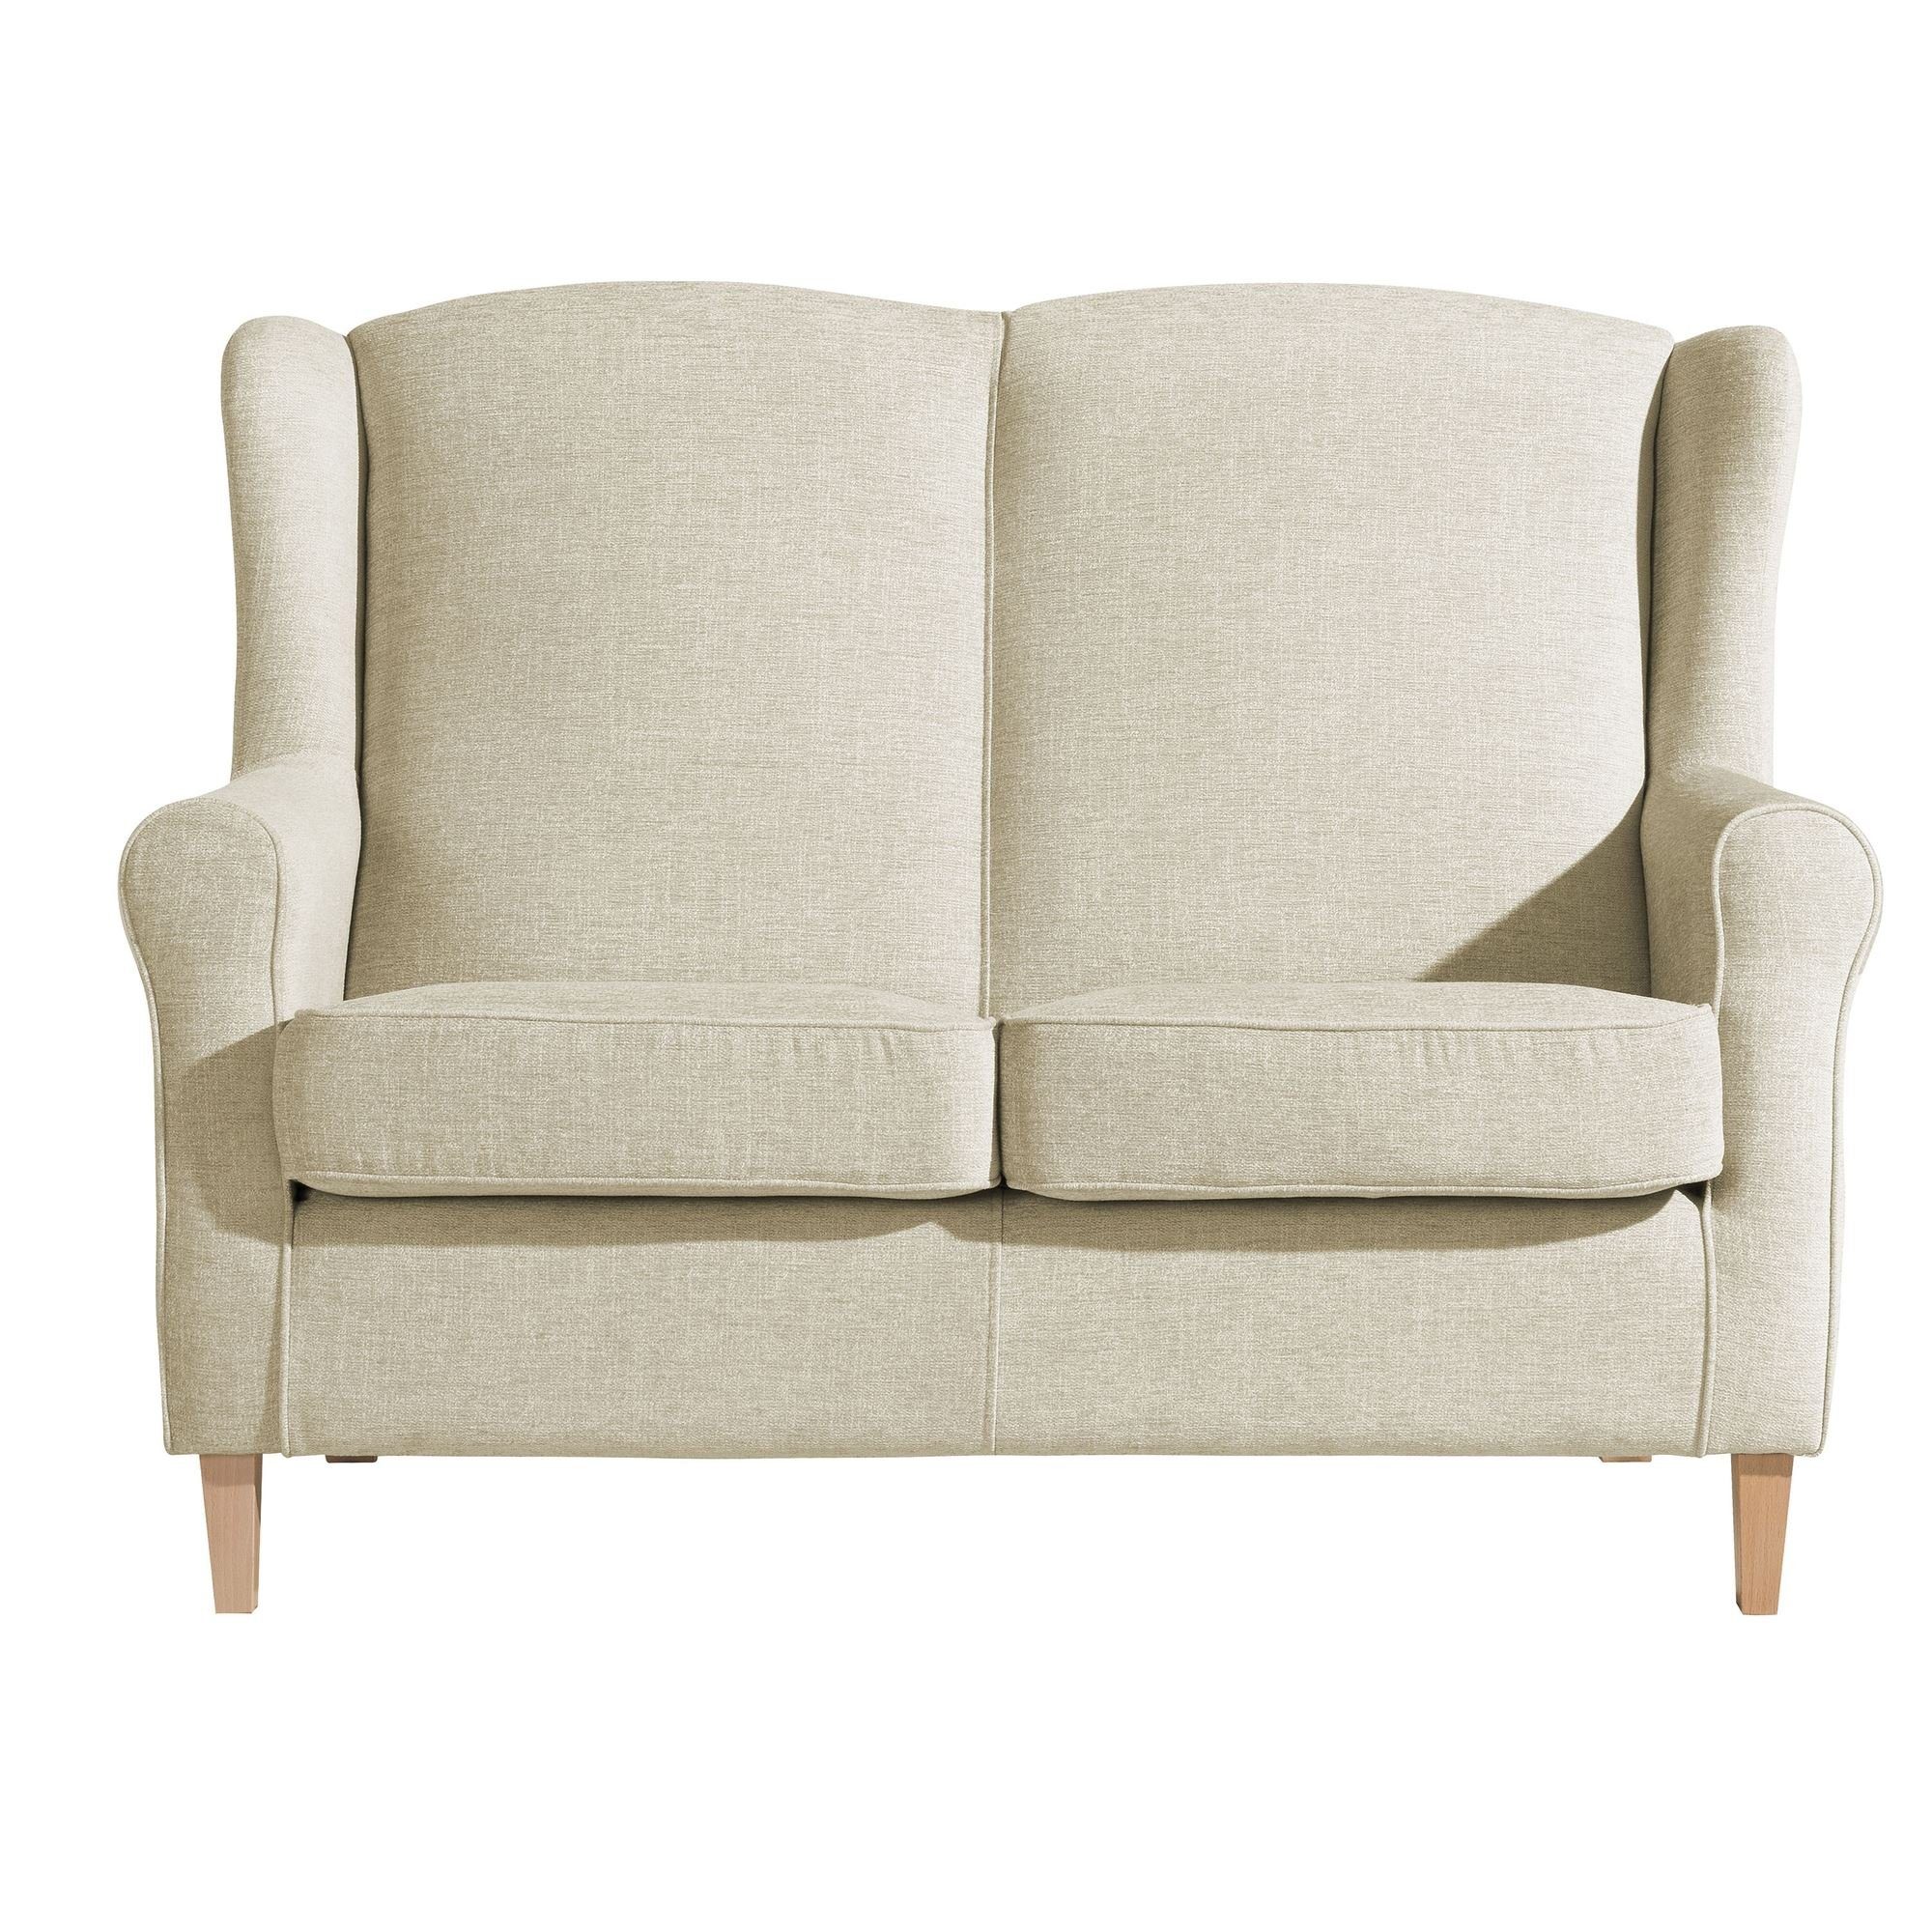 2-Sitzer verarbeitet,bequemer Kostenlosem Sofa Sitz Chenille Karlen aufm natur, hochwertig Sparpreis Sofa Bezug Teile, 1 58 Kessel Versand inkl. Buche